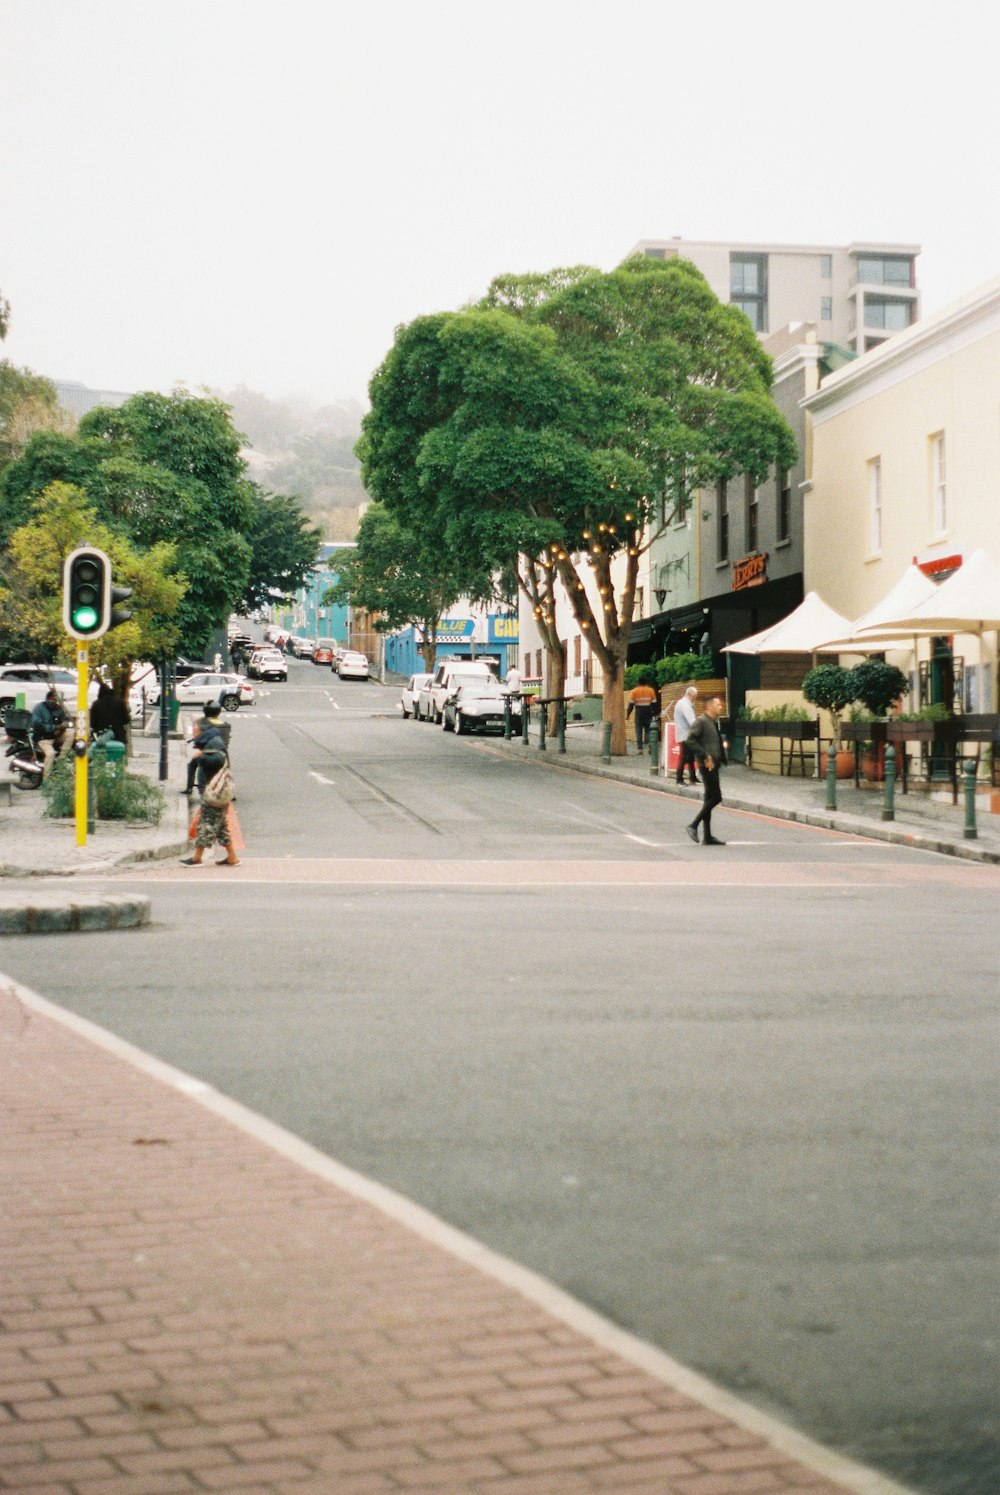 a street scene with people walking on the sidewalk